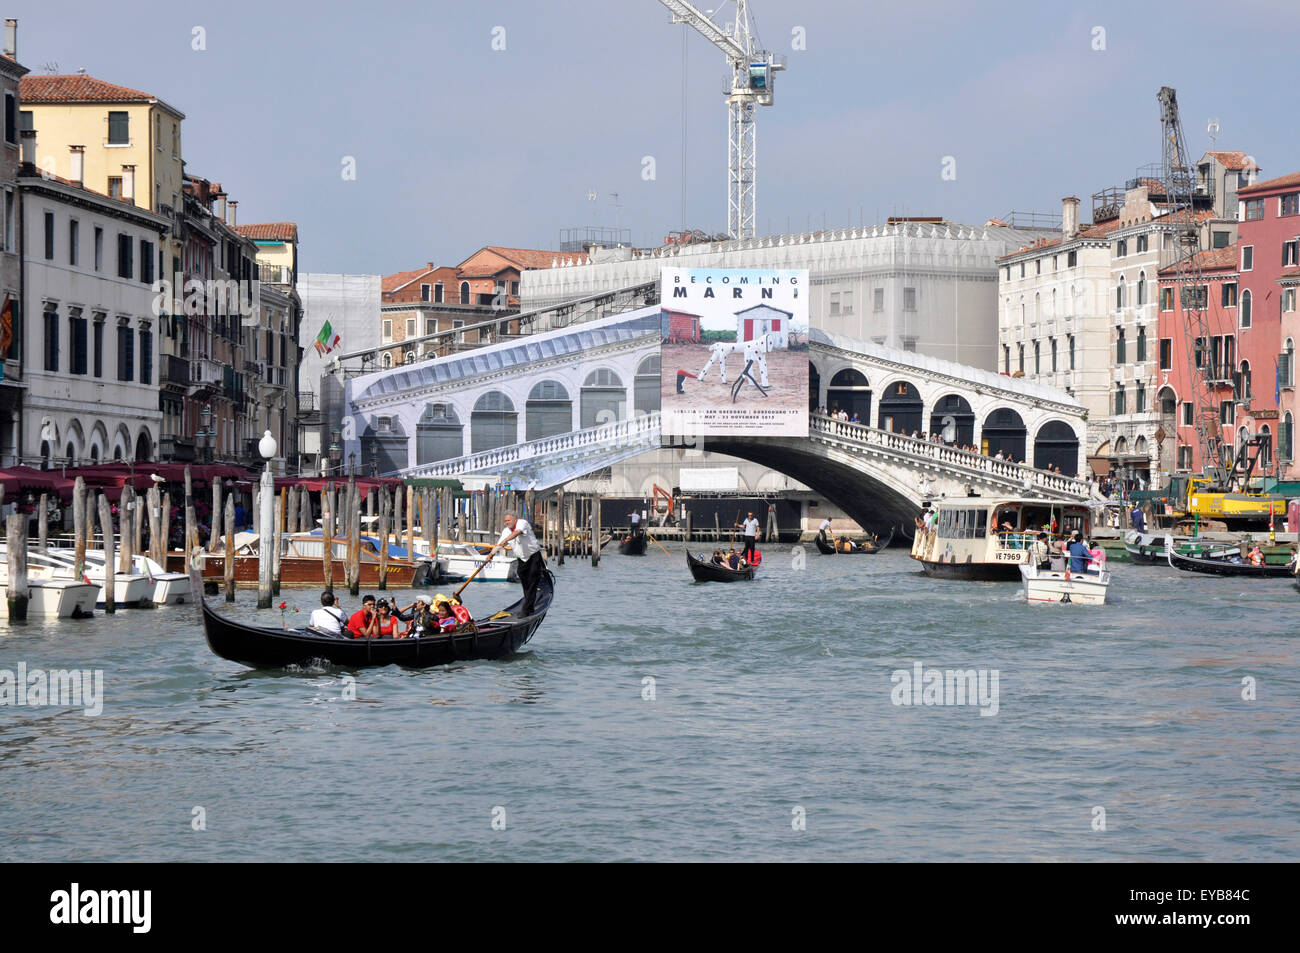 Le Grand Canal - Venise - Italie - gondoles - eau - taxis ferry boats - Scène mouvementée - sunlight - blue sky - toile Pont du Rialto Banque D'Images